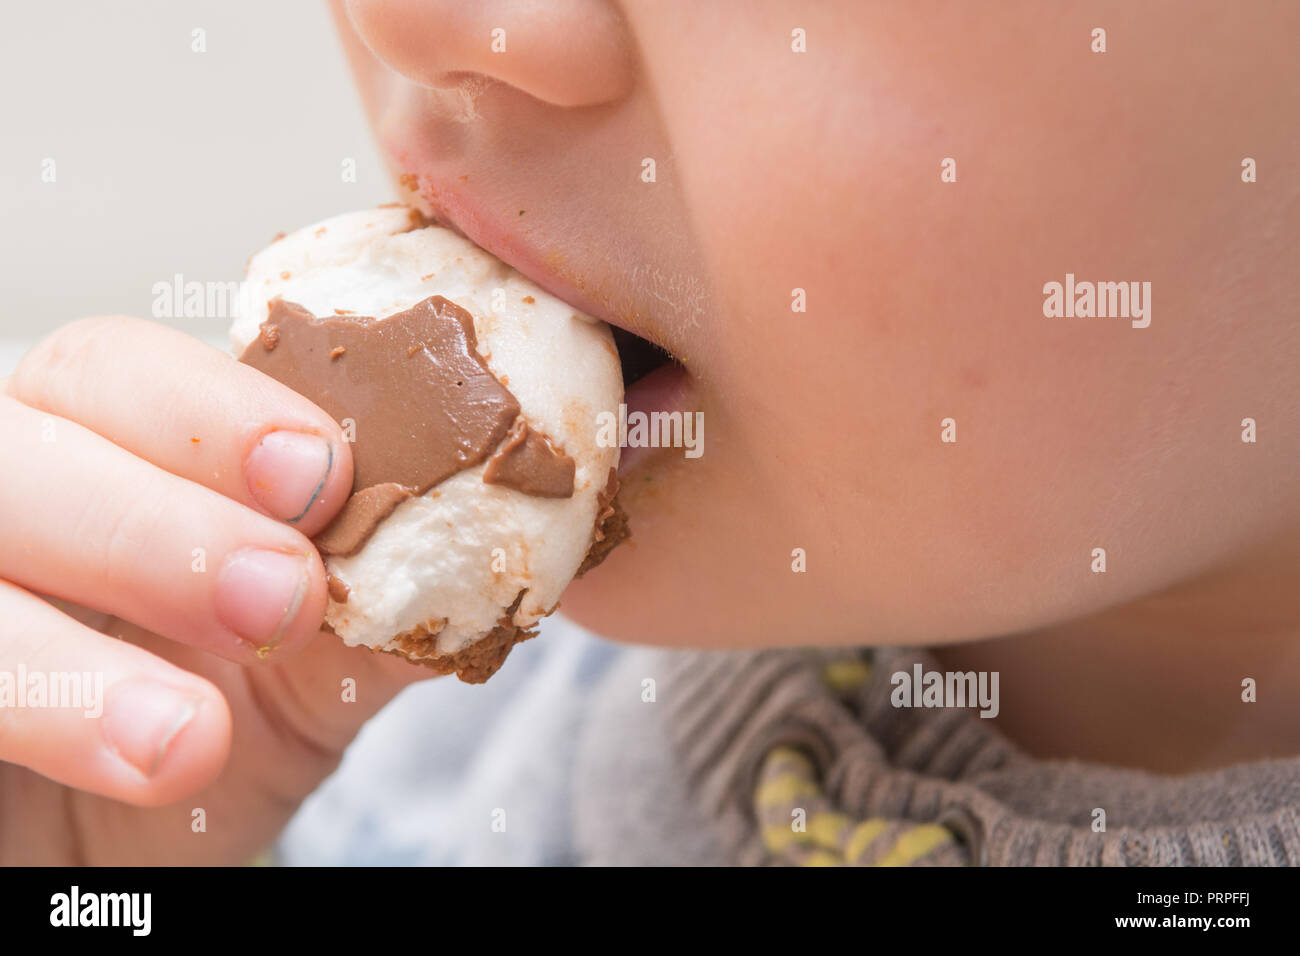 Jeune enfant de manger un casse-croûte au chocolat sucré Banque D'Images